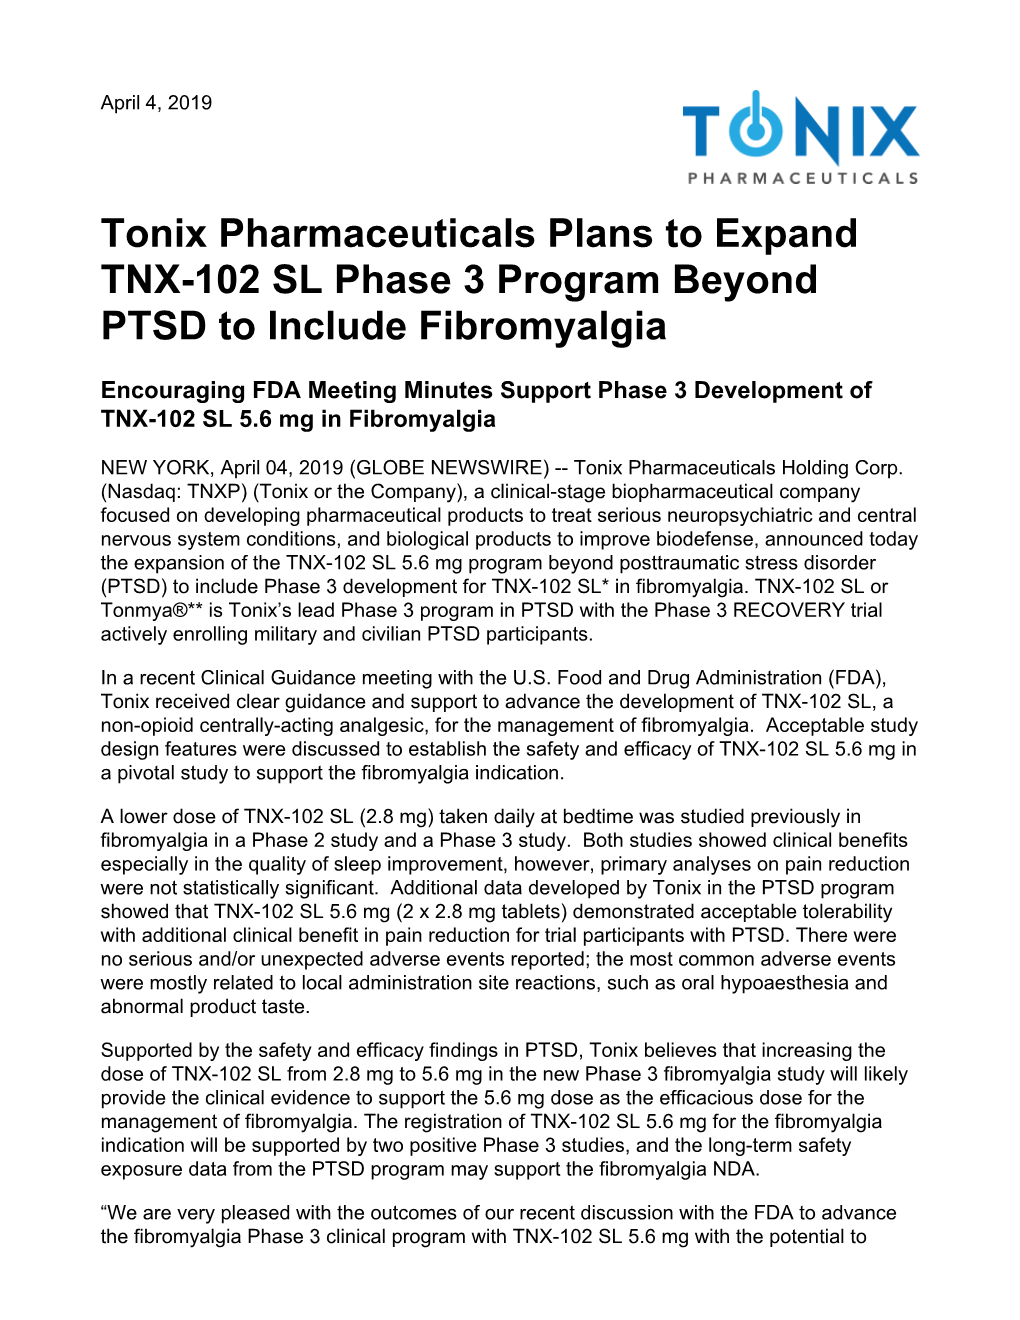 Tonix Pharmaceuticals Plans to Expand TNX-102 SL Phase 3 Program Beyond PTSD to Include Fibromyalgia